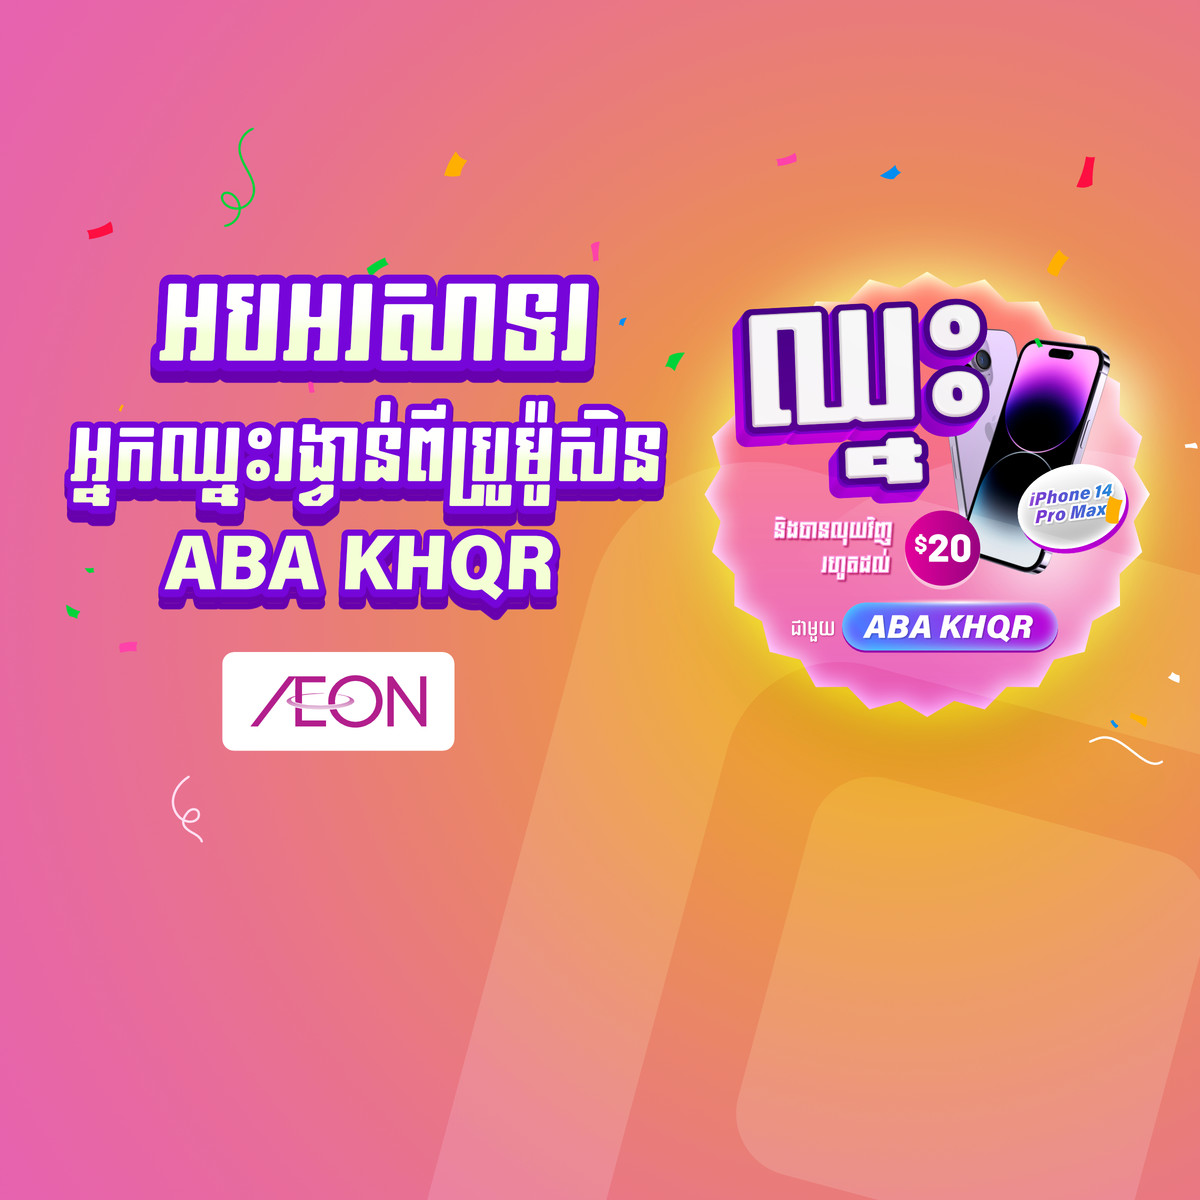 អបអរសាទរដល់អ្នកឈ្នះនៃប្រូម៉ូសិន “បានប្រាក់ត្រលប់ និង ឈ្នះទូរស័ព្ទ iPhone 14 Pro Max ជាមួយ ABA KHQR នៅ AEON Cambodia”